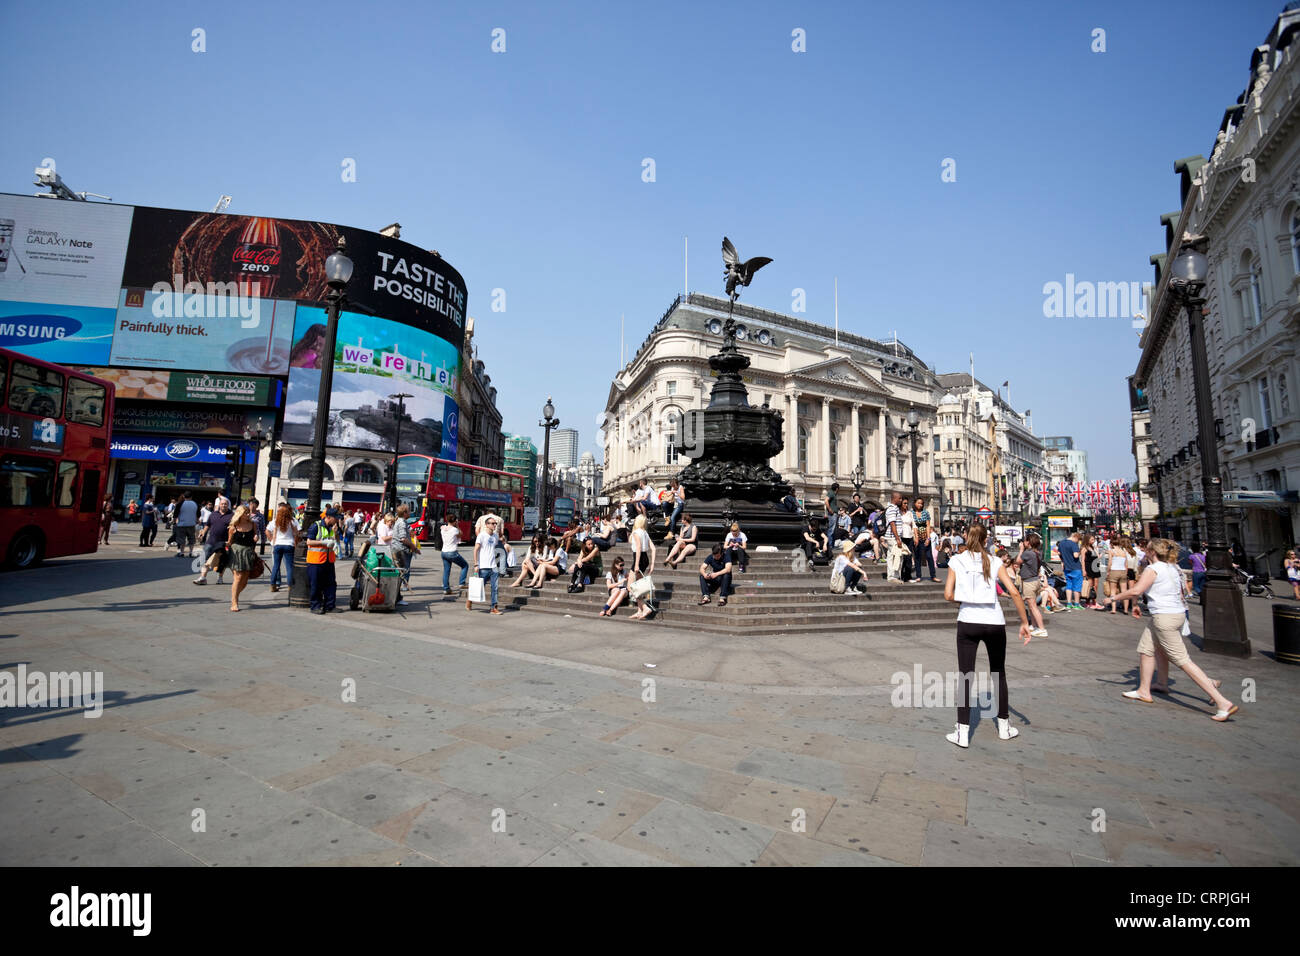 La vie quotidienne de la ville : Piccadilly Circus sur scène un jour d'été, Londres, Angleterre, Royaume-Uni Banque D'Images